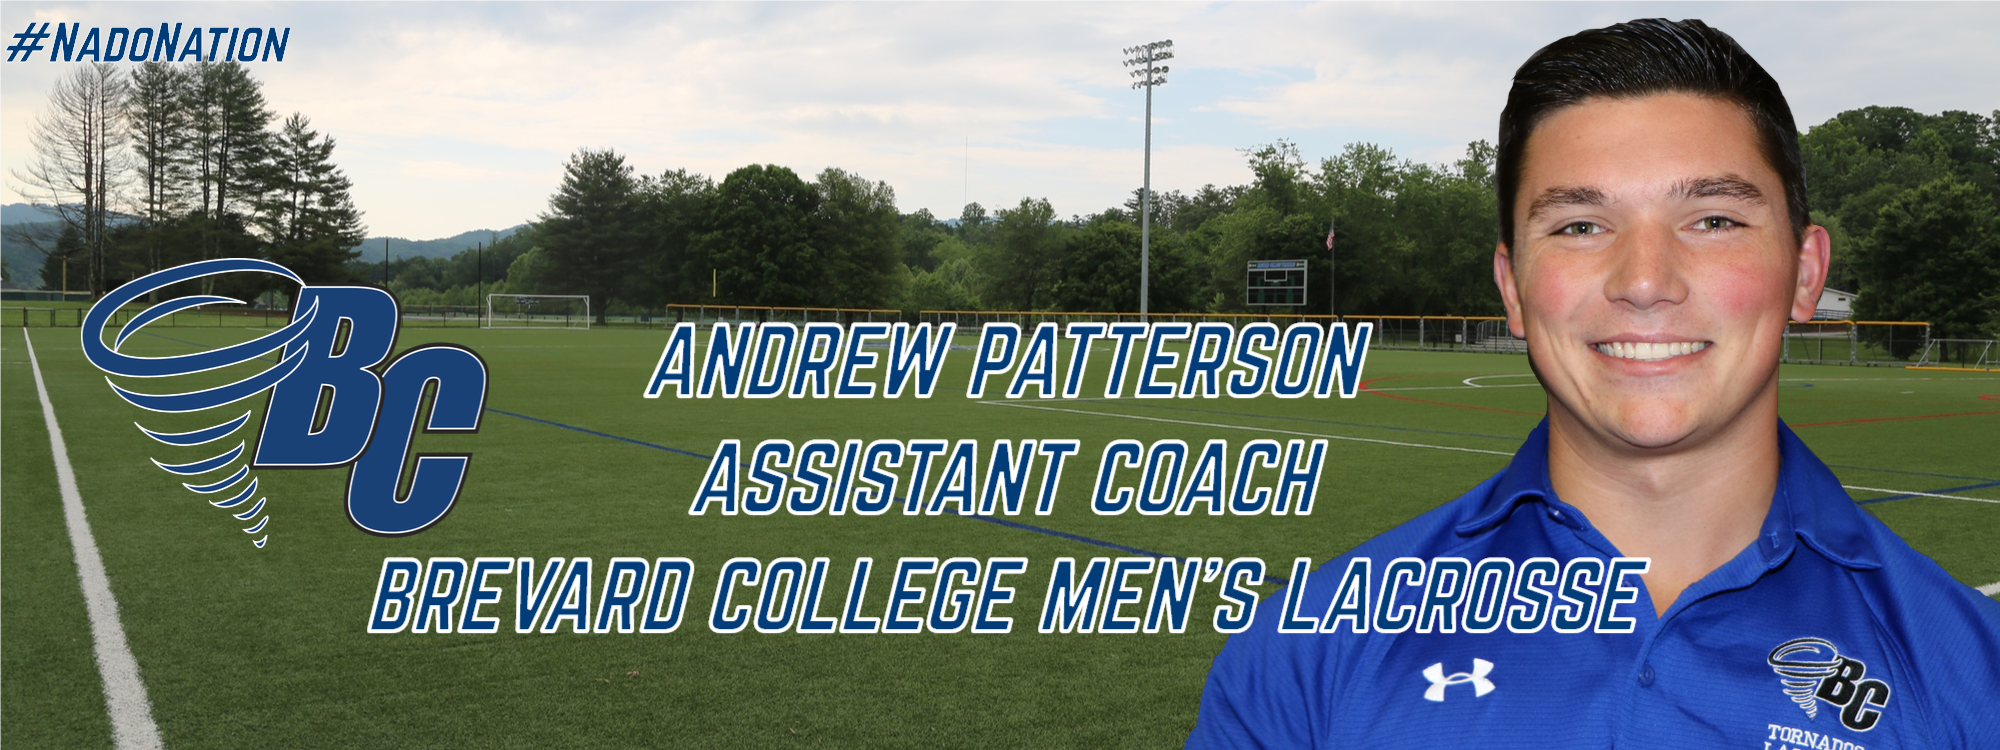 Fritz Tabs Patterson as Men’s Lacrosse Assistant Coach